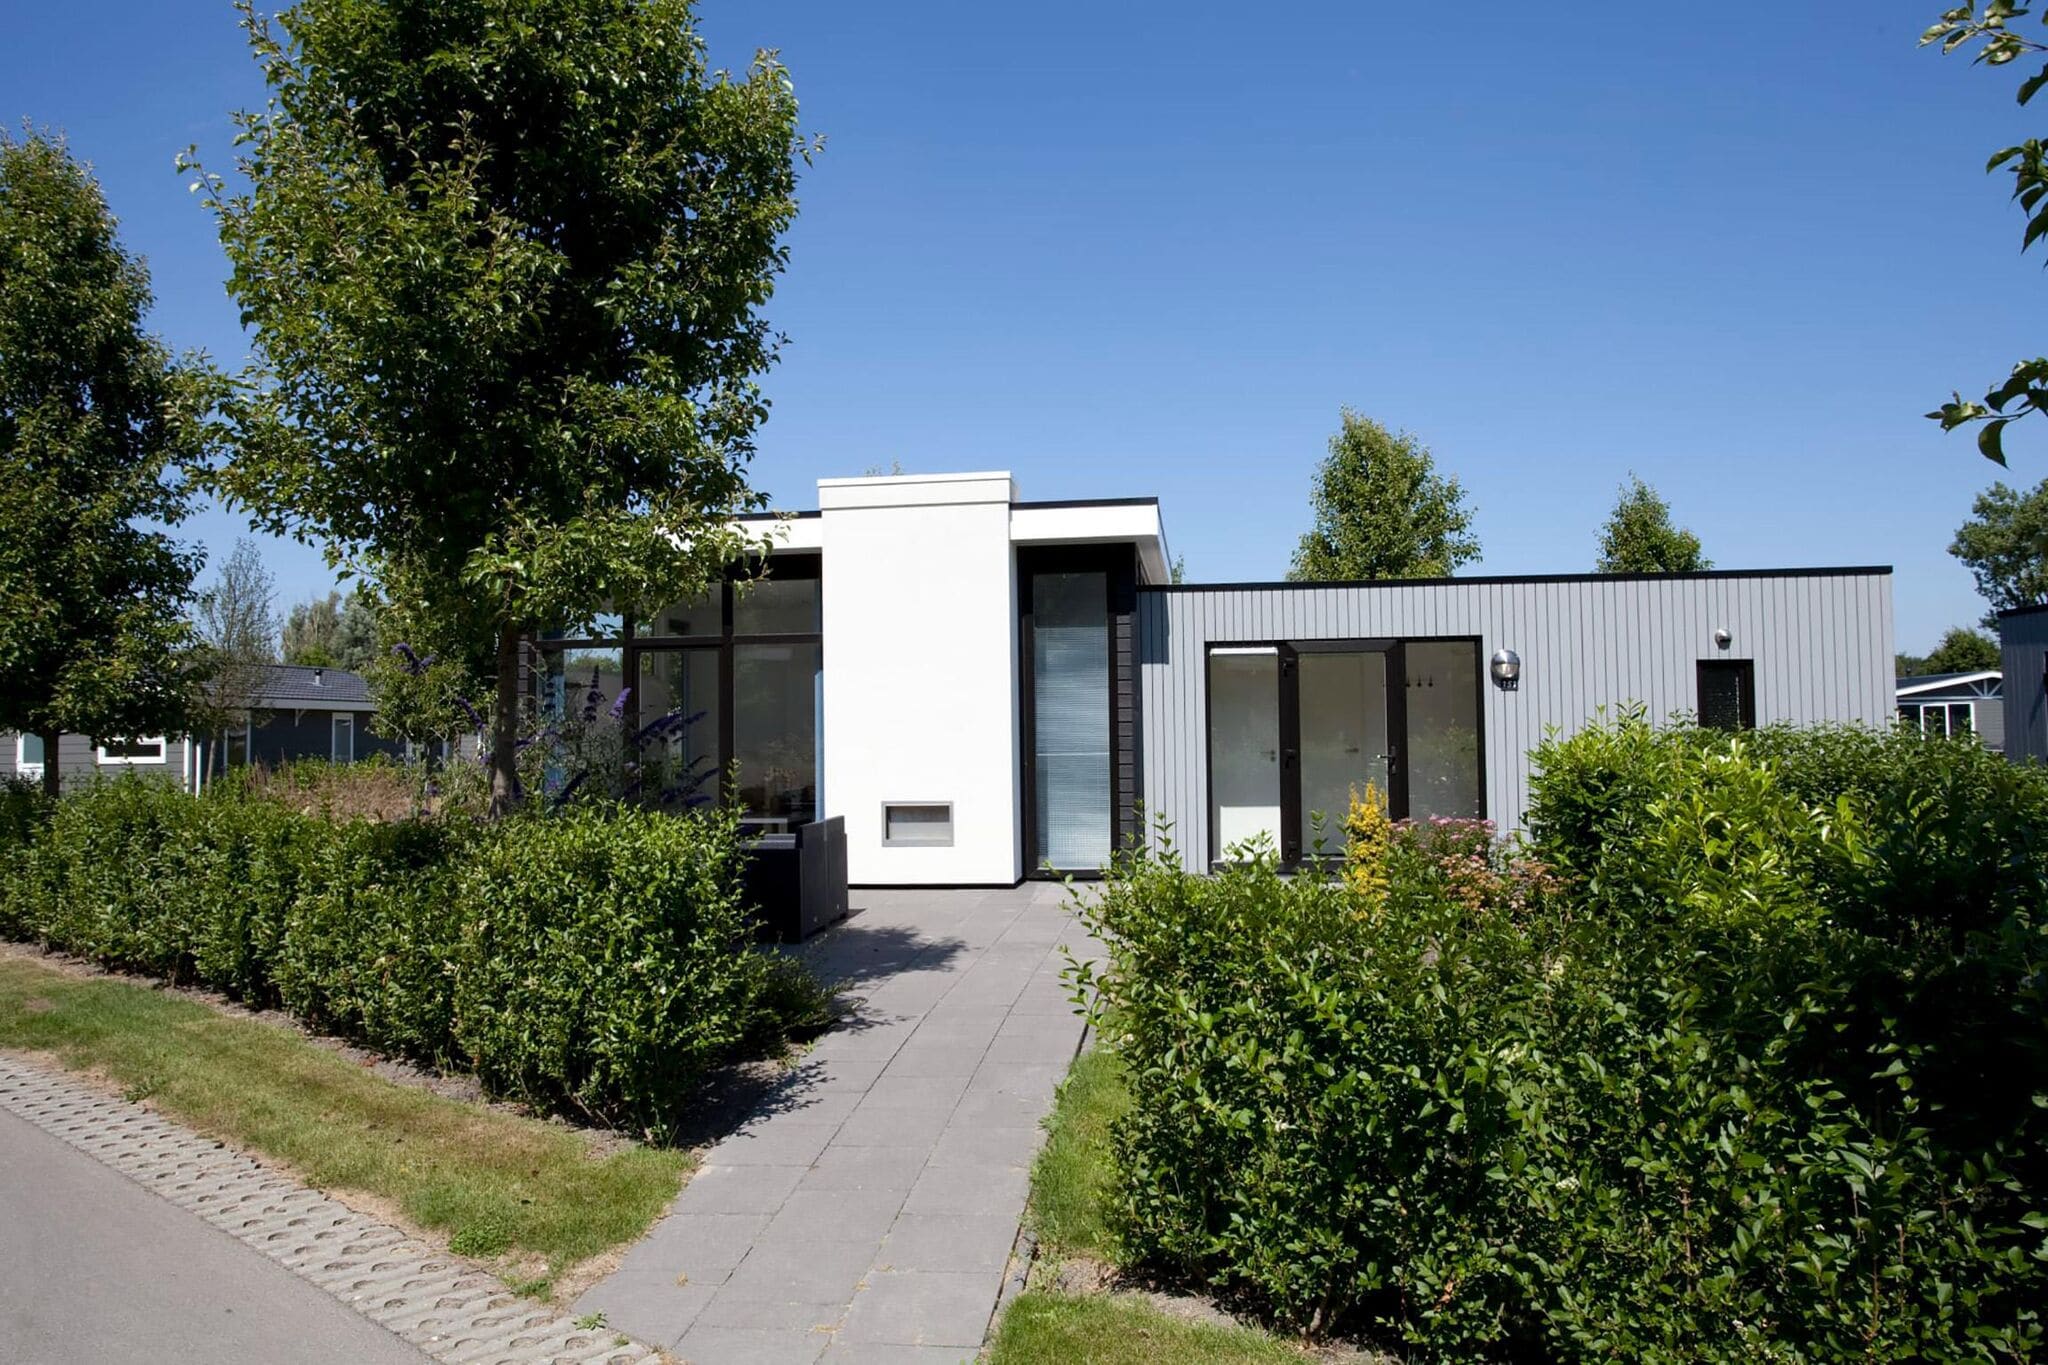 Modernes Ferienhaus mit Geschirrspüler, in einem Ferienpark, 25 km aus Amsterdam